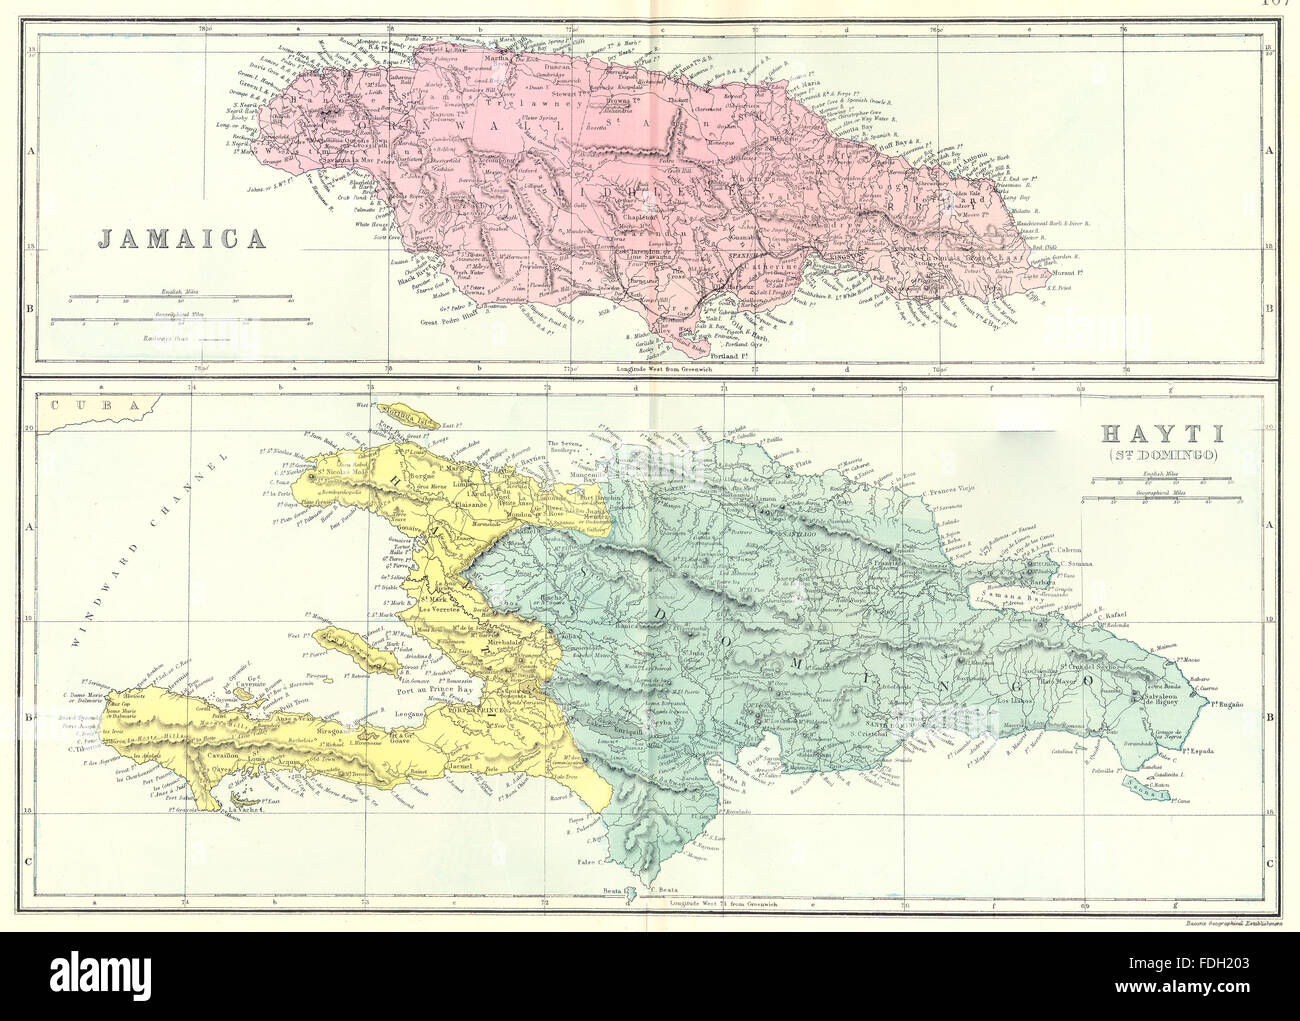 La Jamaïque et Haïti : Haïti Santo Domingo République dominicaine. Bacon, 1895 map Banque D'Images